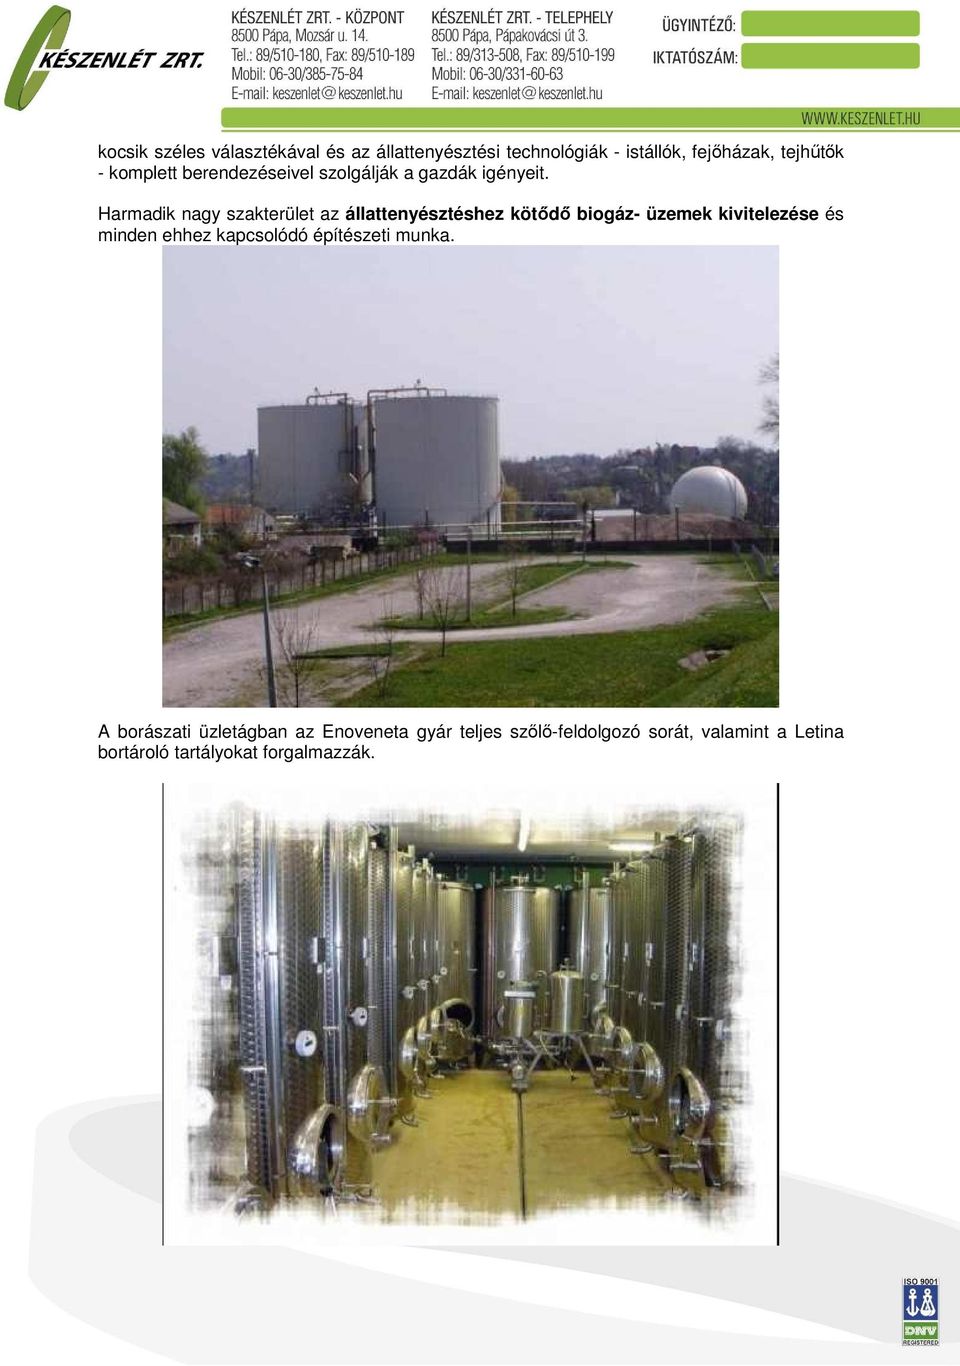 Harmadik nagy szakterület az állattenyésztéshez kötődő biogáz- üzemek kivitelezése és minden ehhez